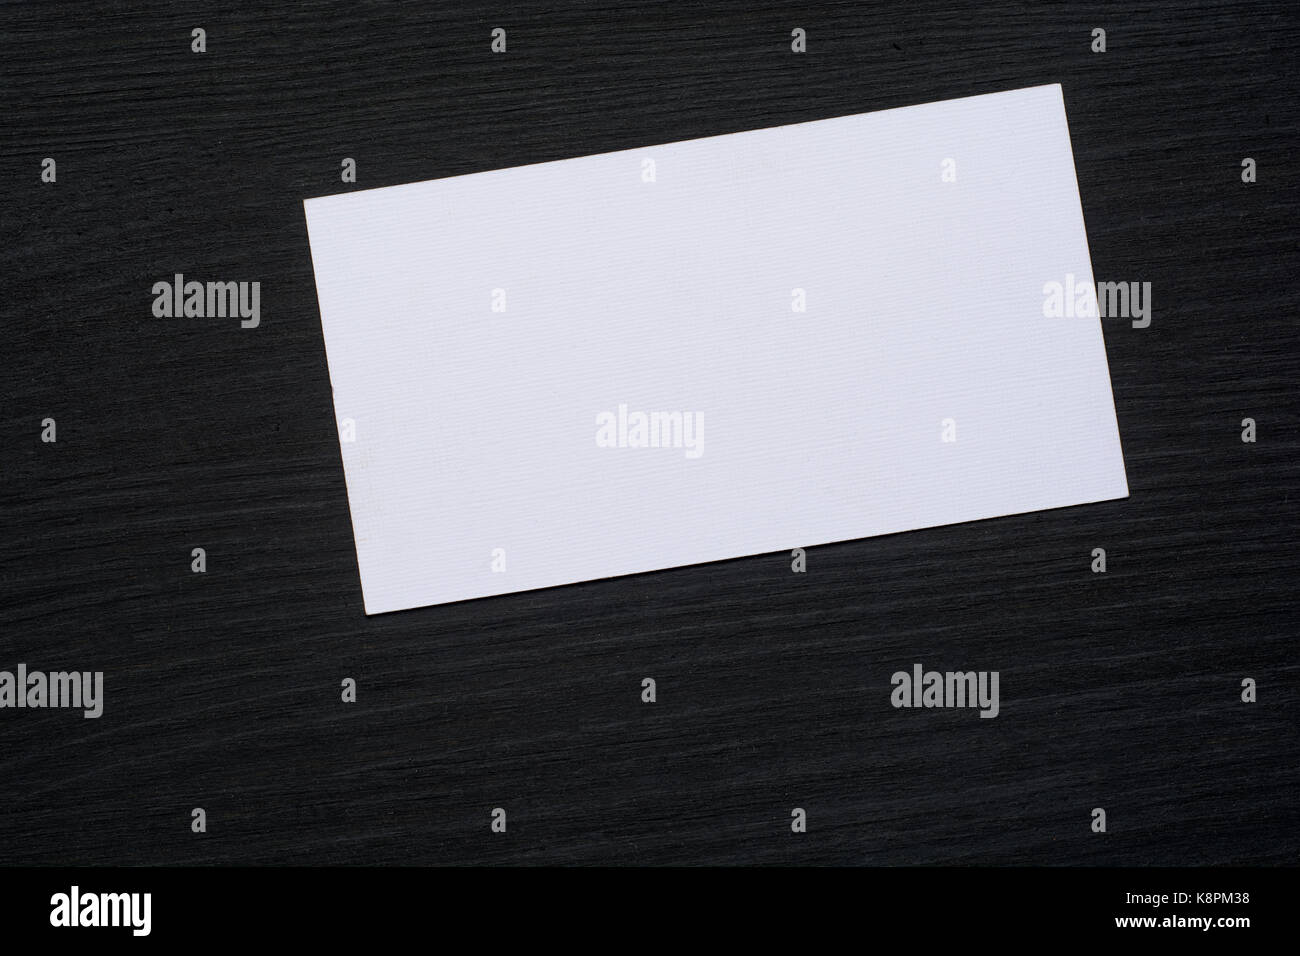 Foto von leere weiße Visitenkarten auf einem dunklen Hintergrund. Mock-up für das Branding Identität. Stockfoto